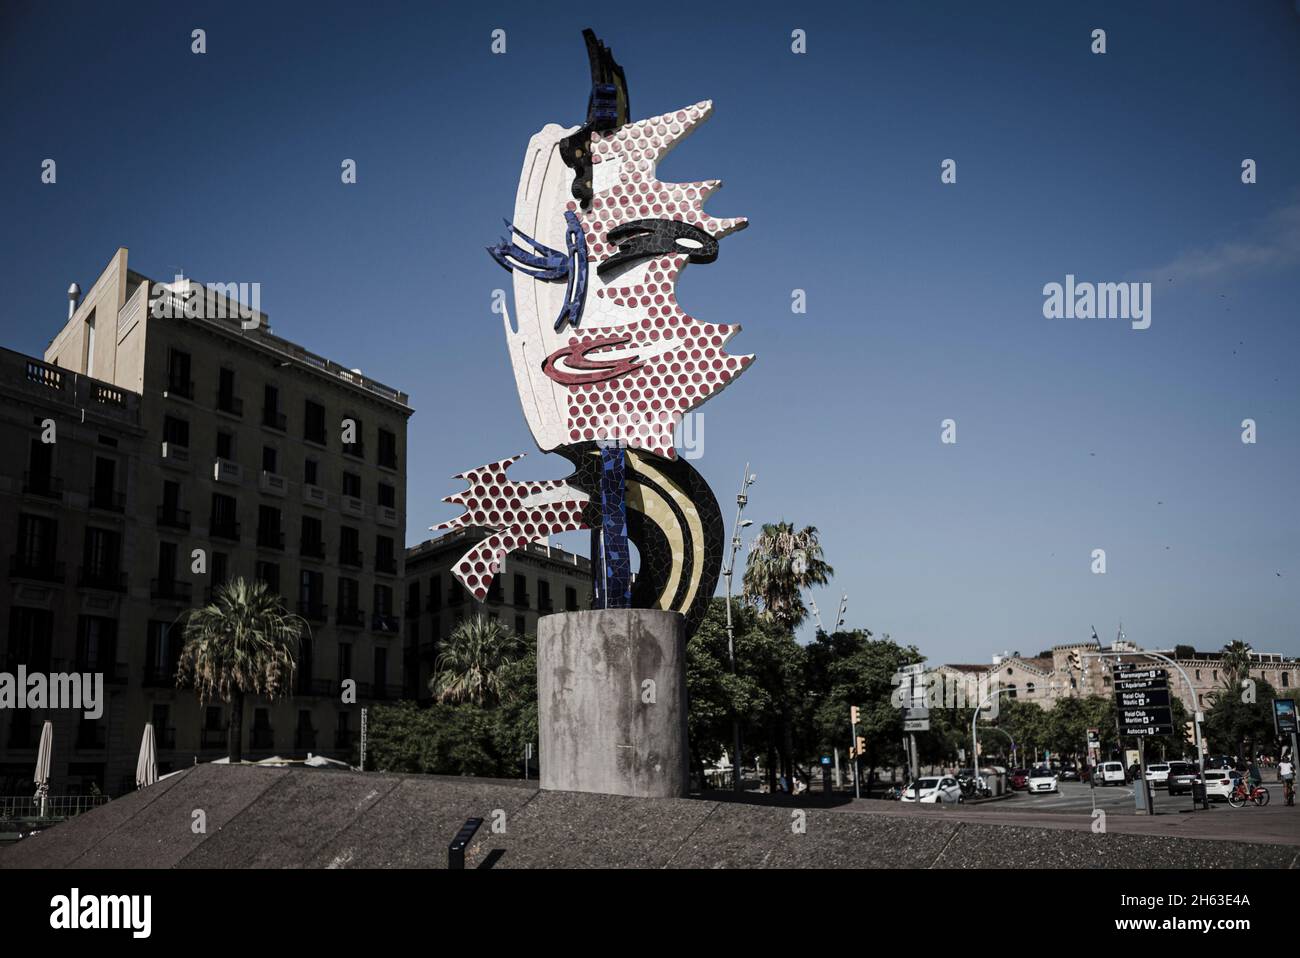 el cap de barcelona es una escultura creada por el pop americano roy lichtenstein para los juegos olímpicos de 1992 en barcelona. Foto de stock